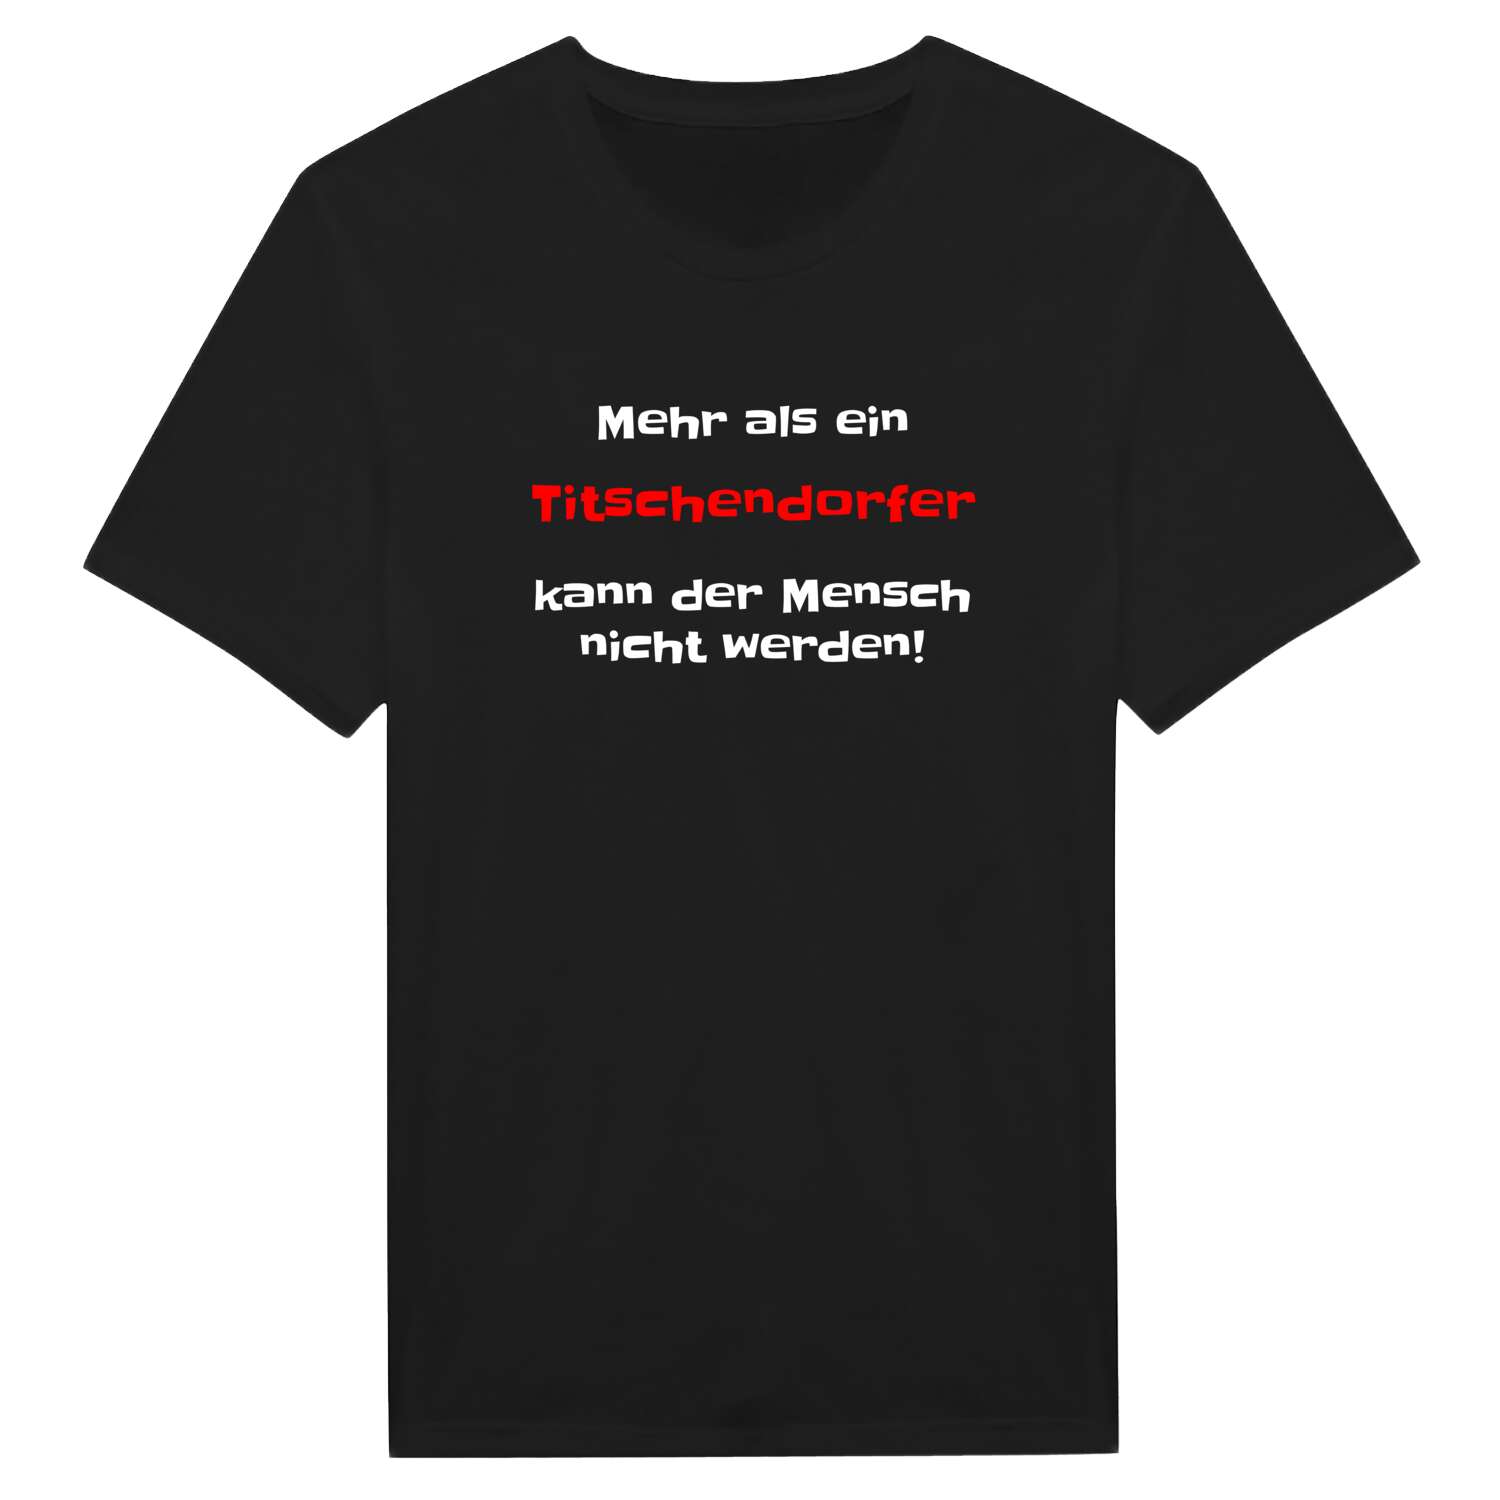 Titschendorf T-Shirt »Mehr als ein«